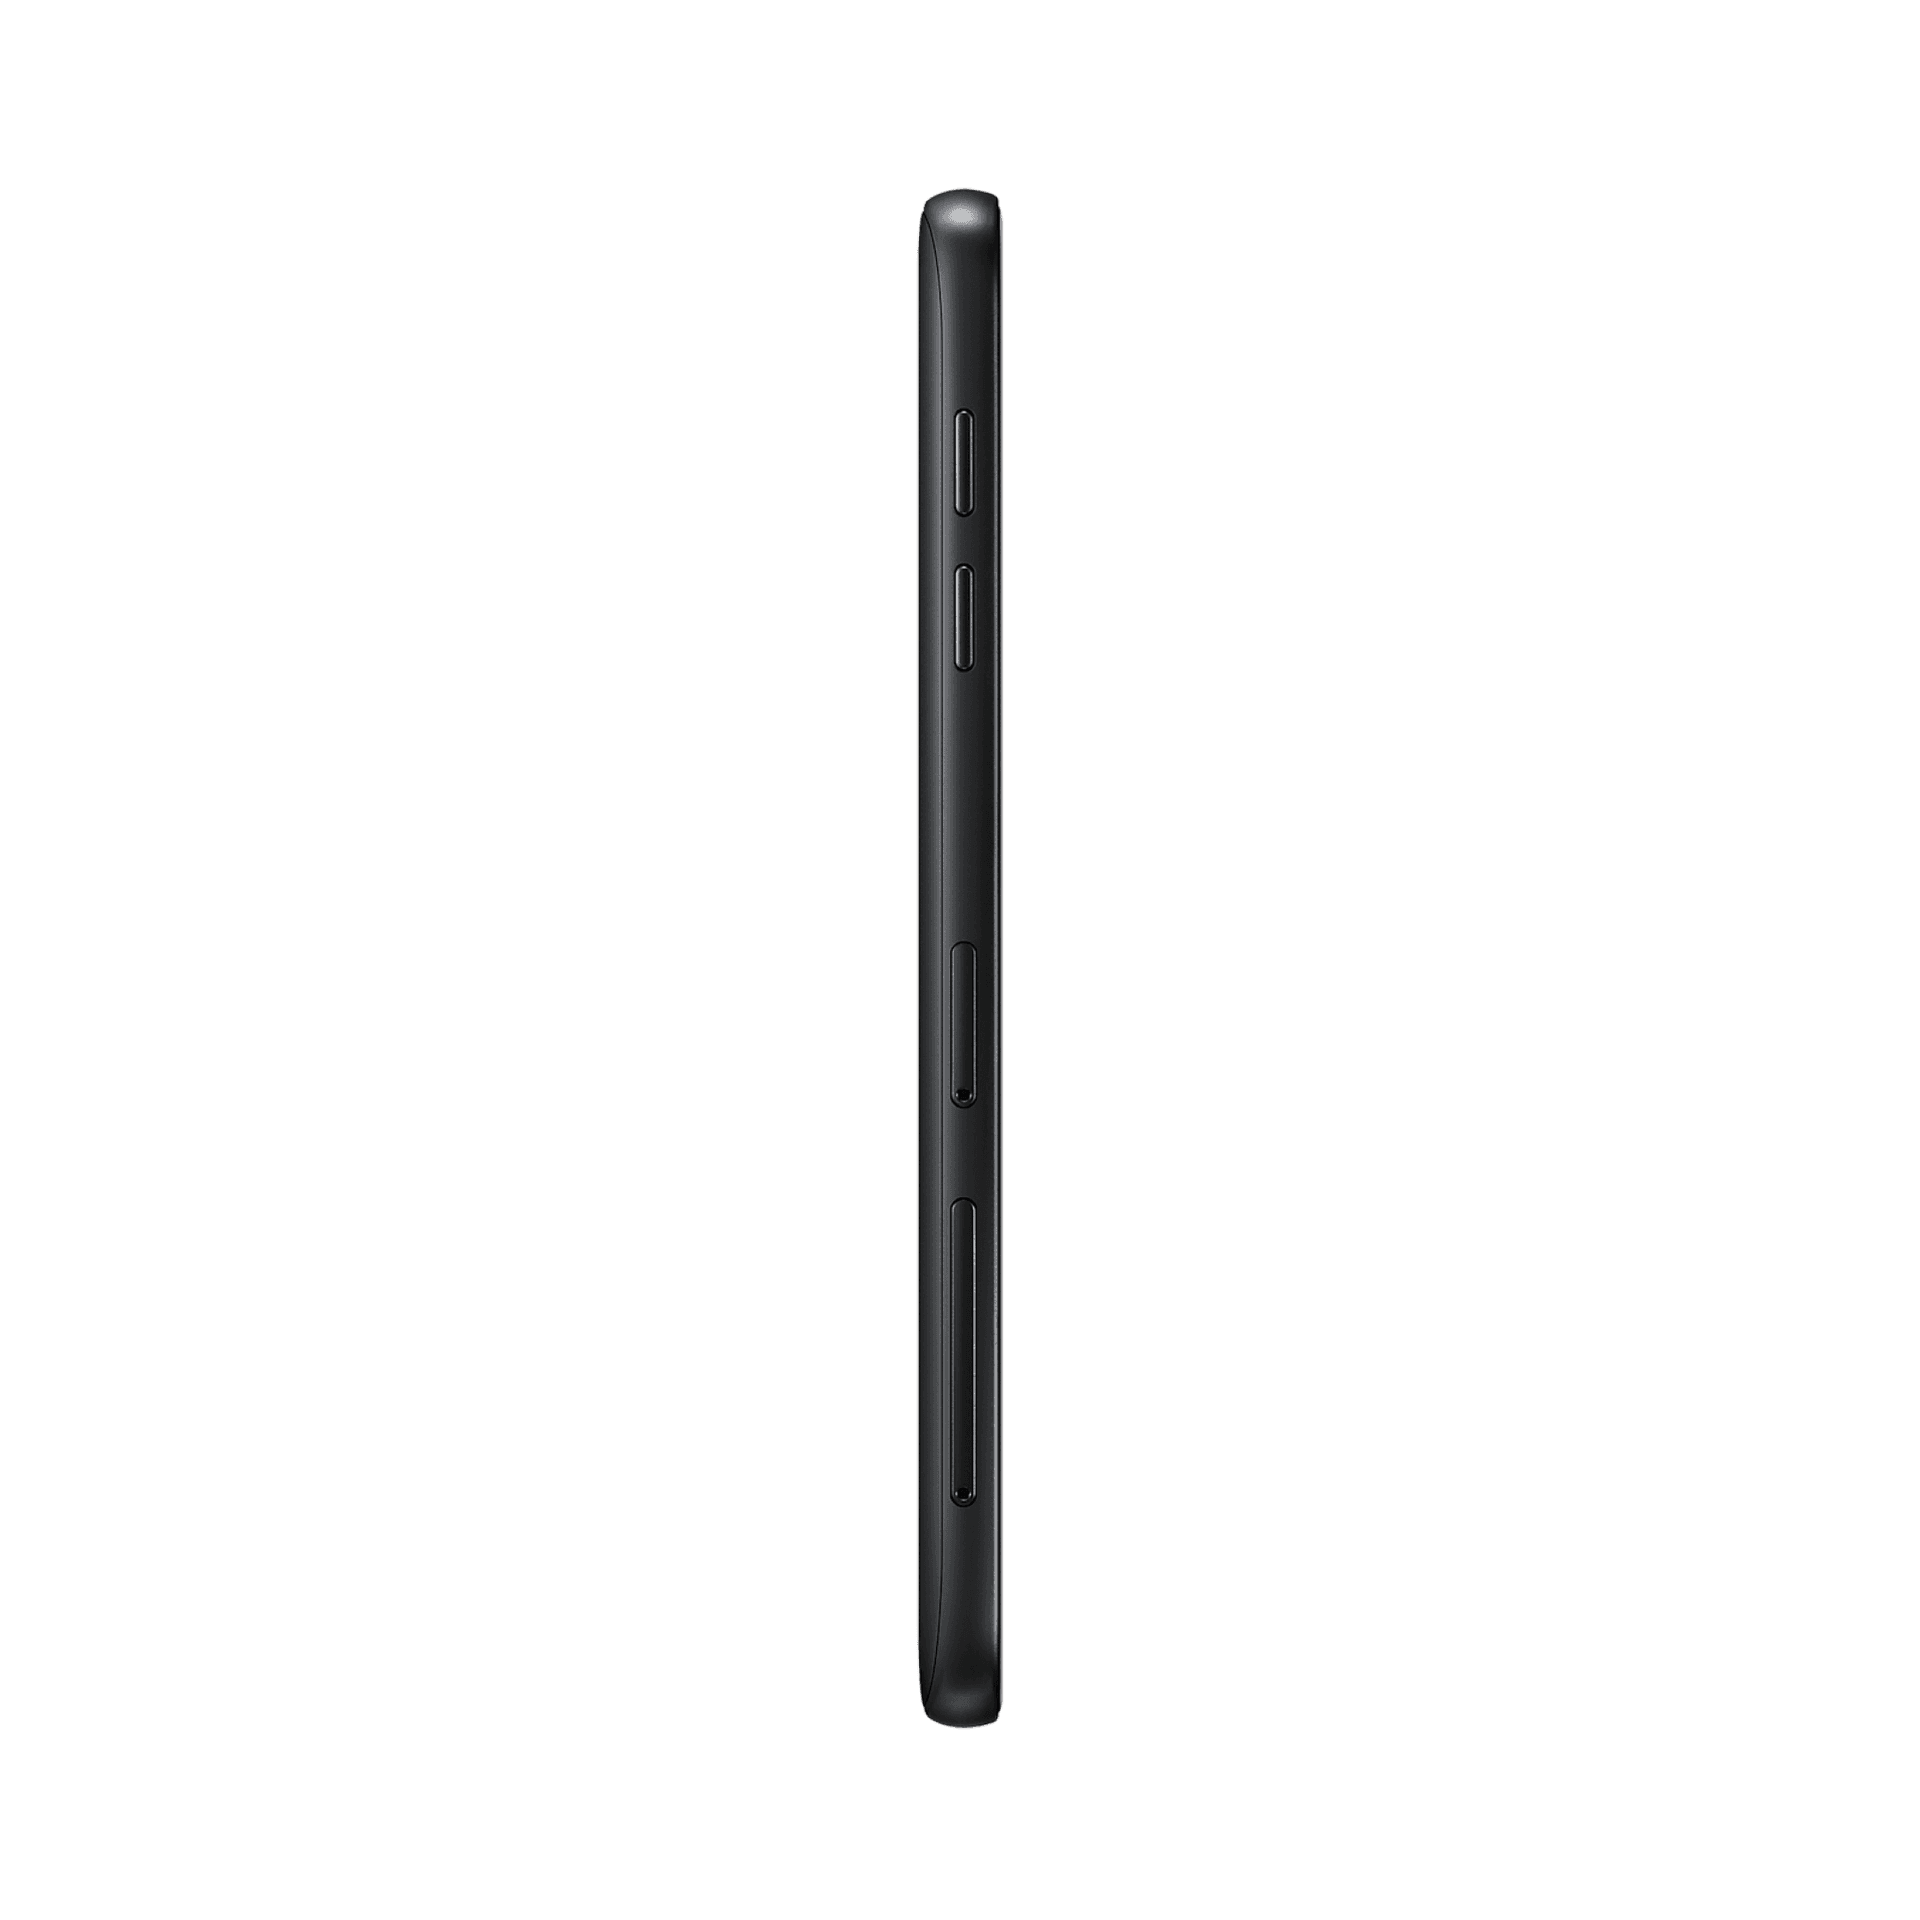 Samsung Galaxy J6 - 32 GB - Siyah